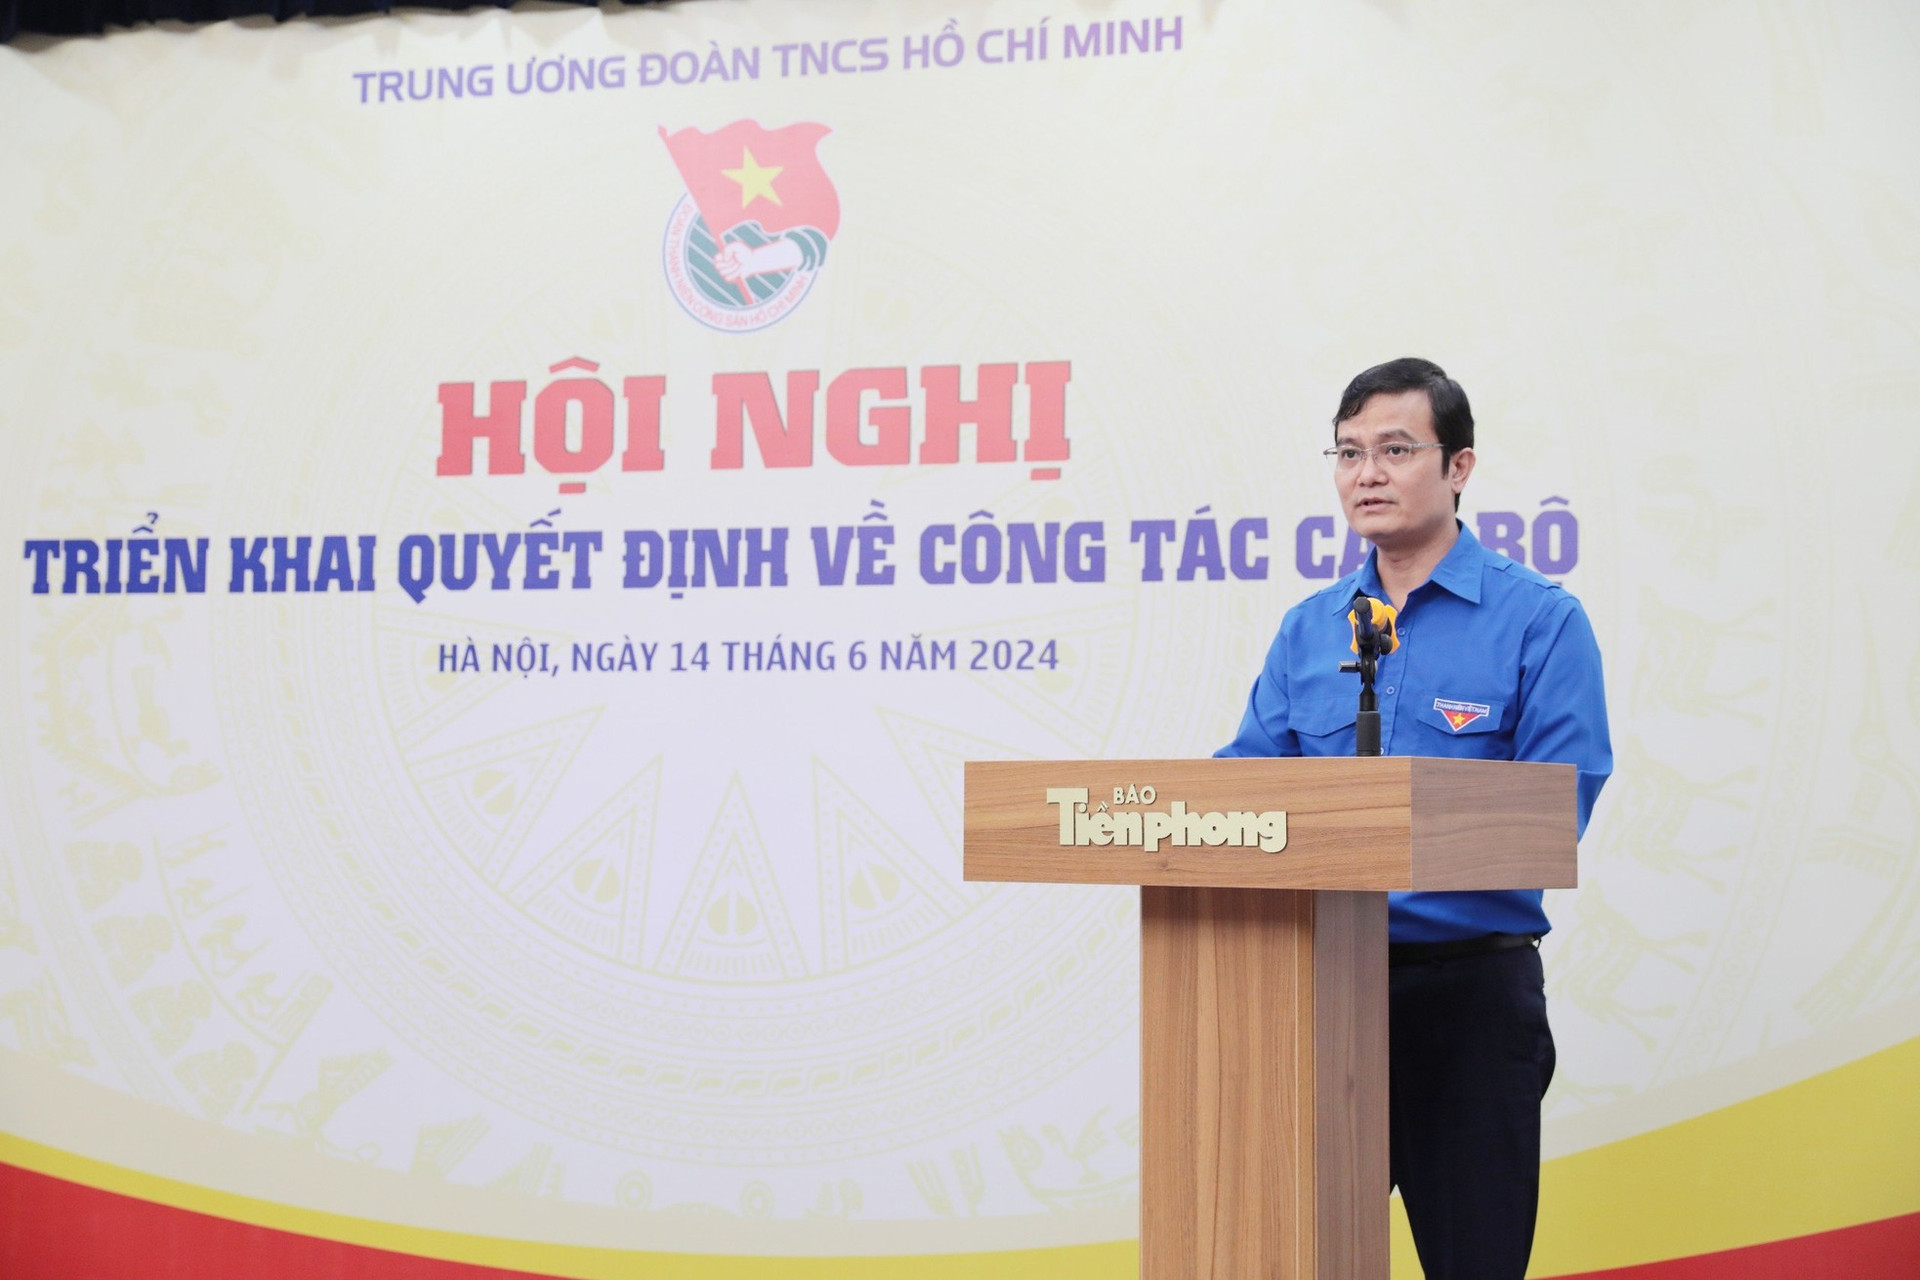 Trung ương Đoàn bổ nhiệm nhà báo Phùng Công Sưởng làm Tổng Biên tập Báo Tiền Phong ảnh 3